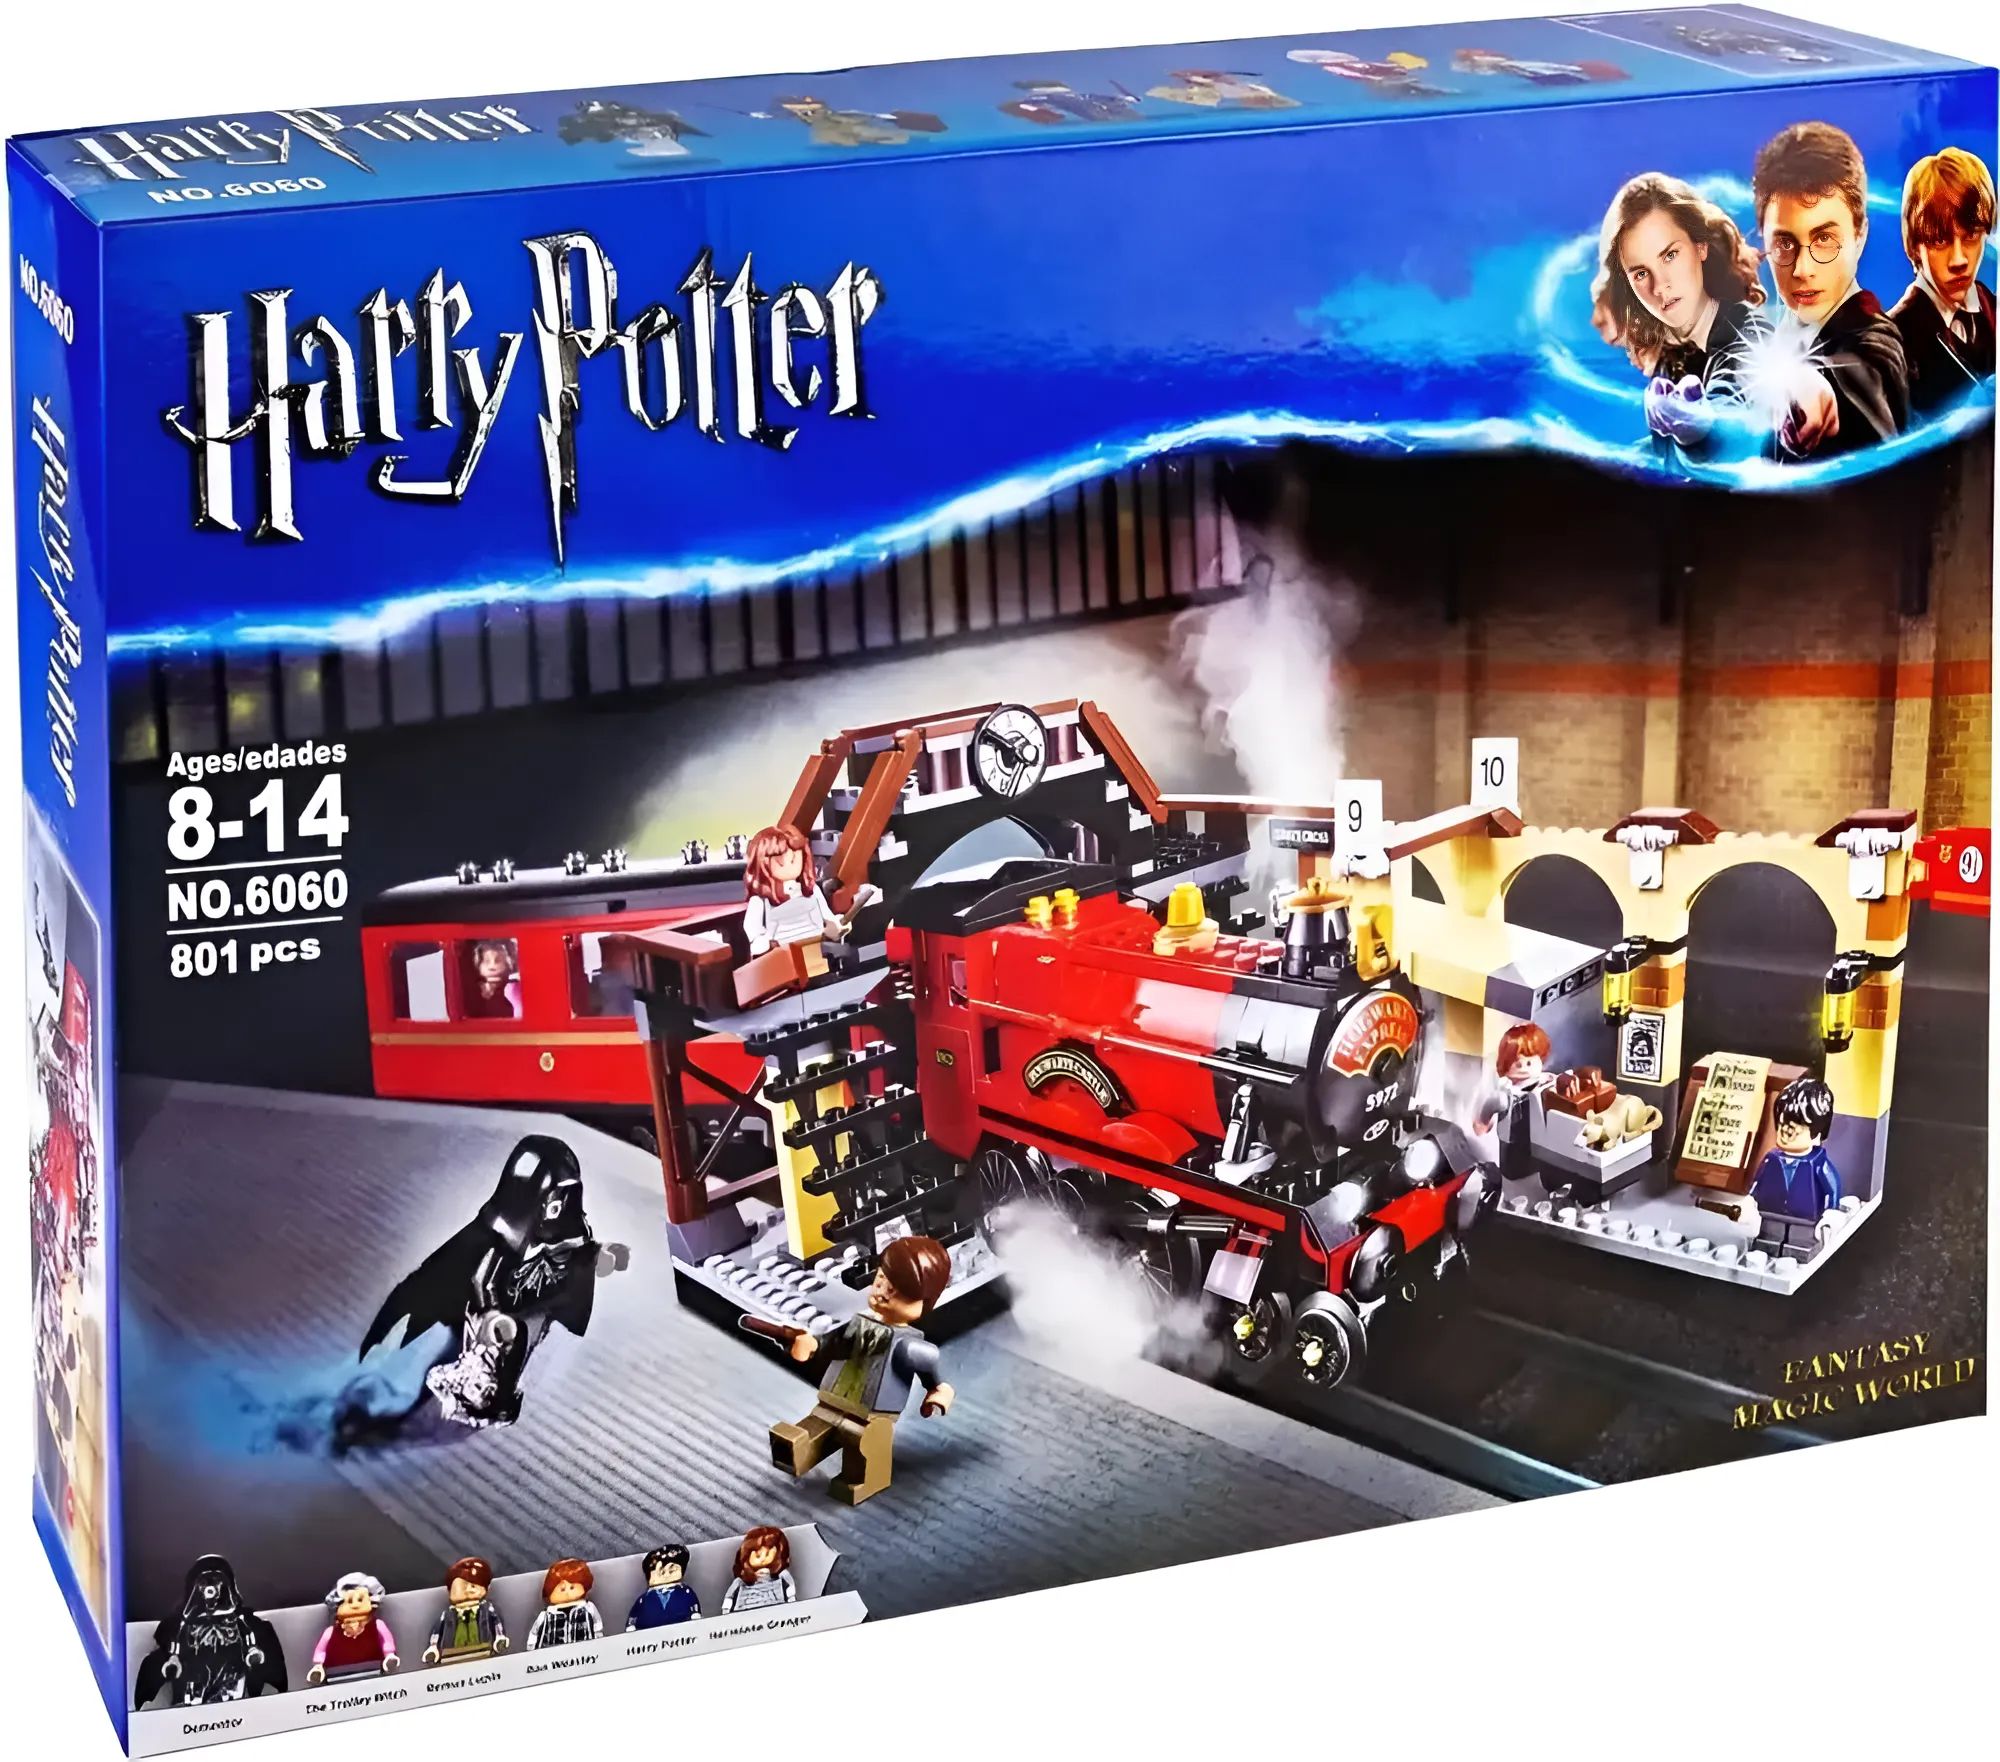 Конструктор Гарри Поттер Хогвартс-экспресс, 801 деталь, 6060, совместим с лего, для мальчика и девочки